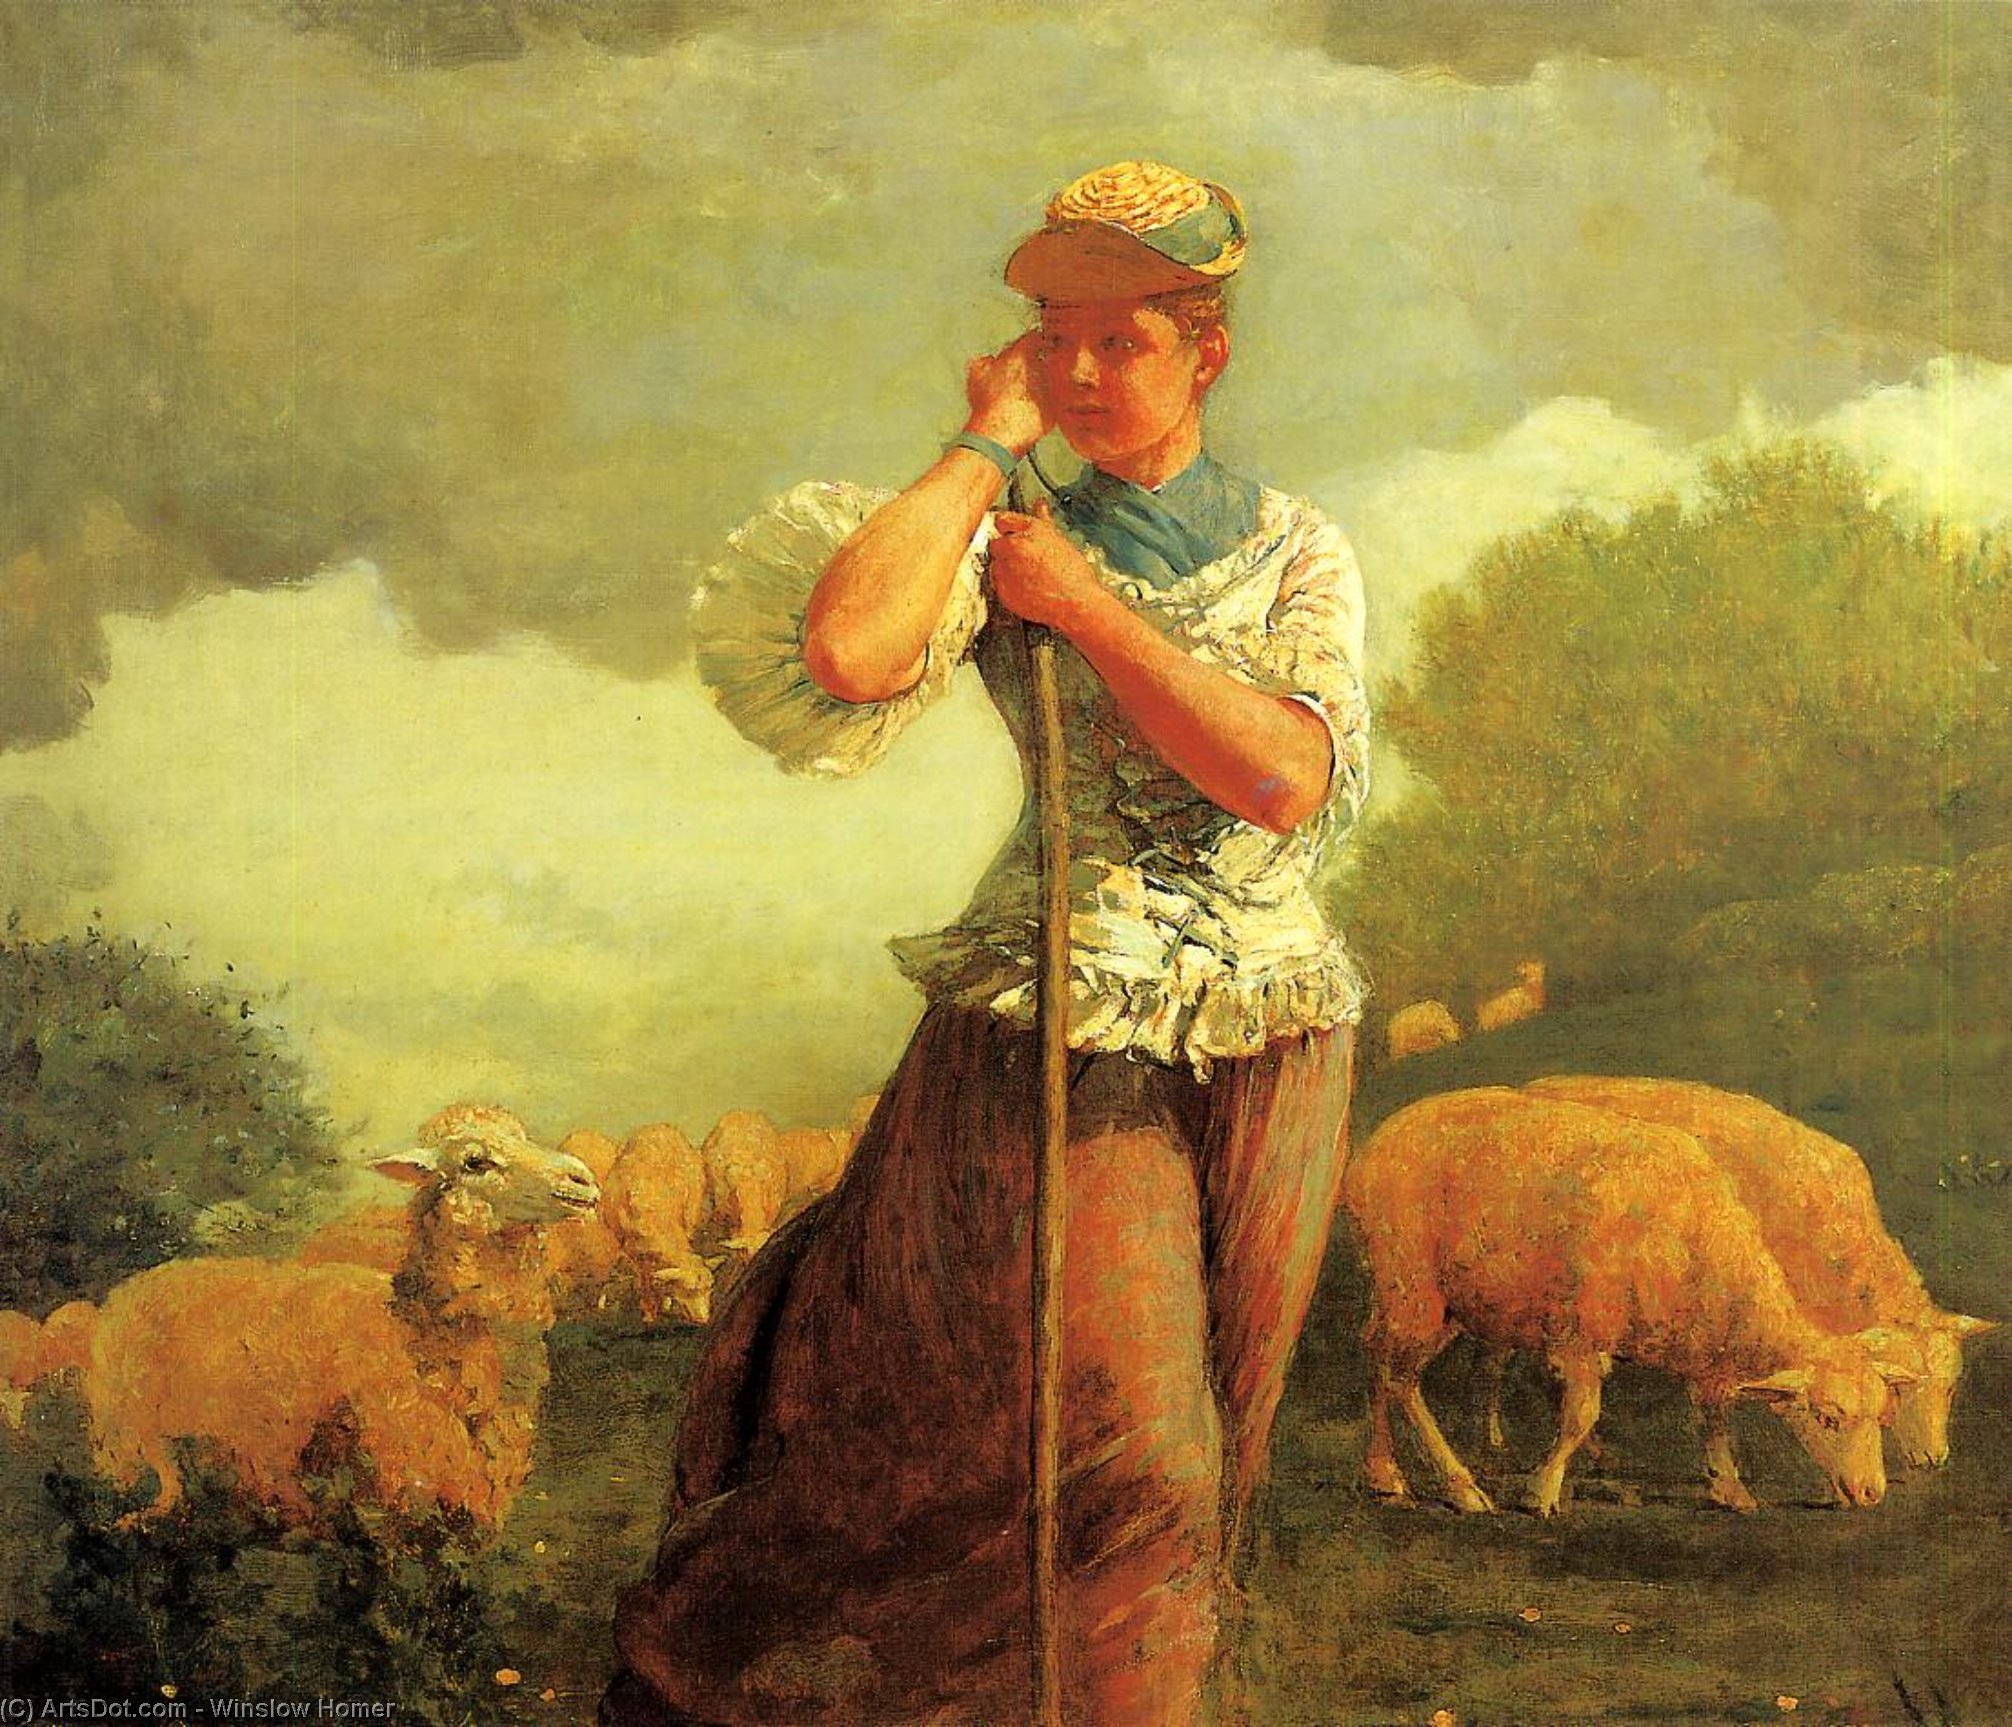 WikiOO.org - אנציקלופדיה לאמנויות יפות - ציור, יצירות אמנות Winslow Homer - The Shepherdess of Houghton Farm